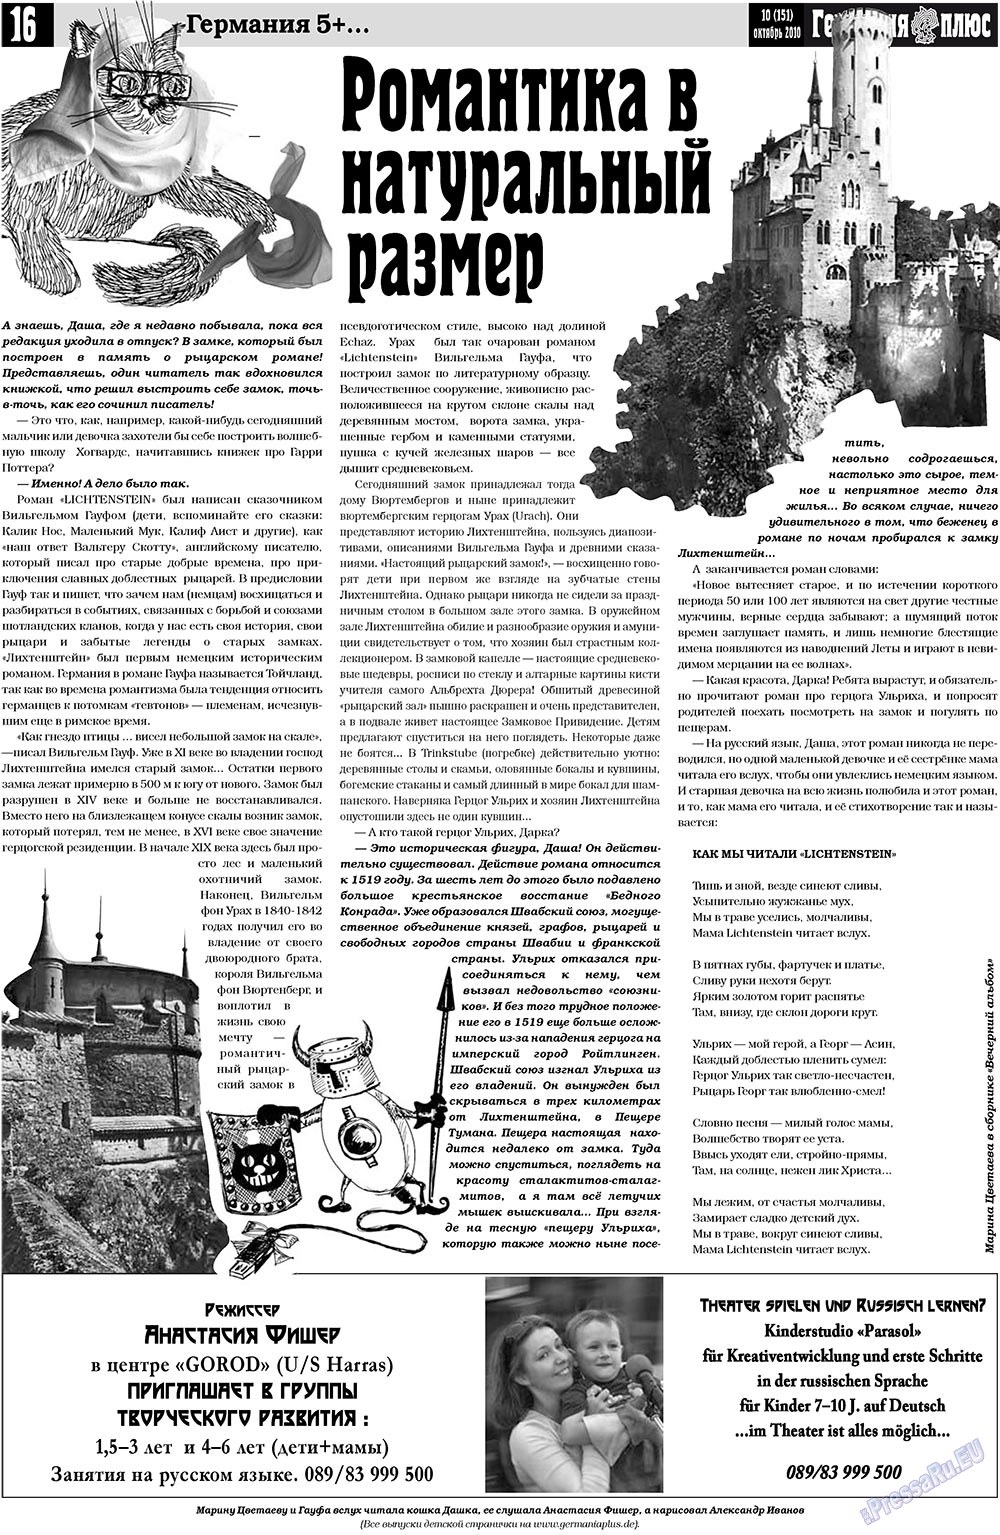 Германия плюс, газета. 2010 №10 стр.16